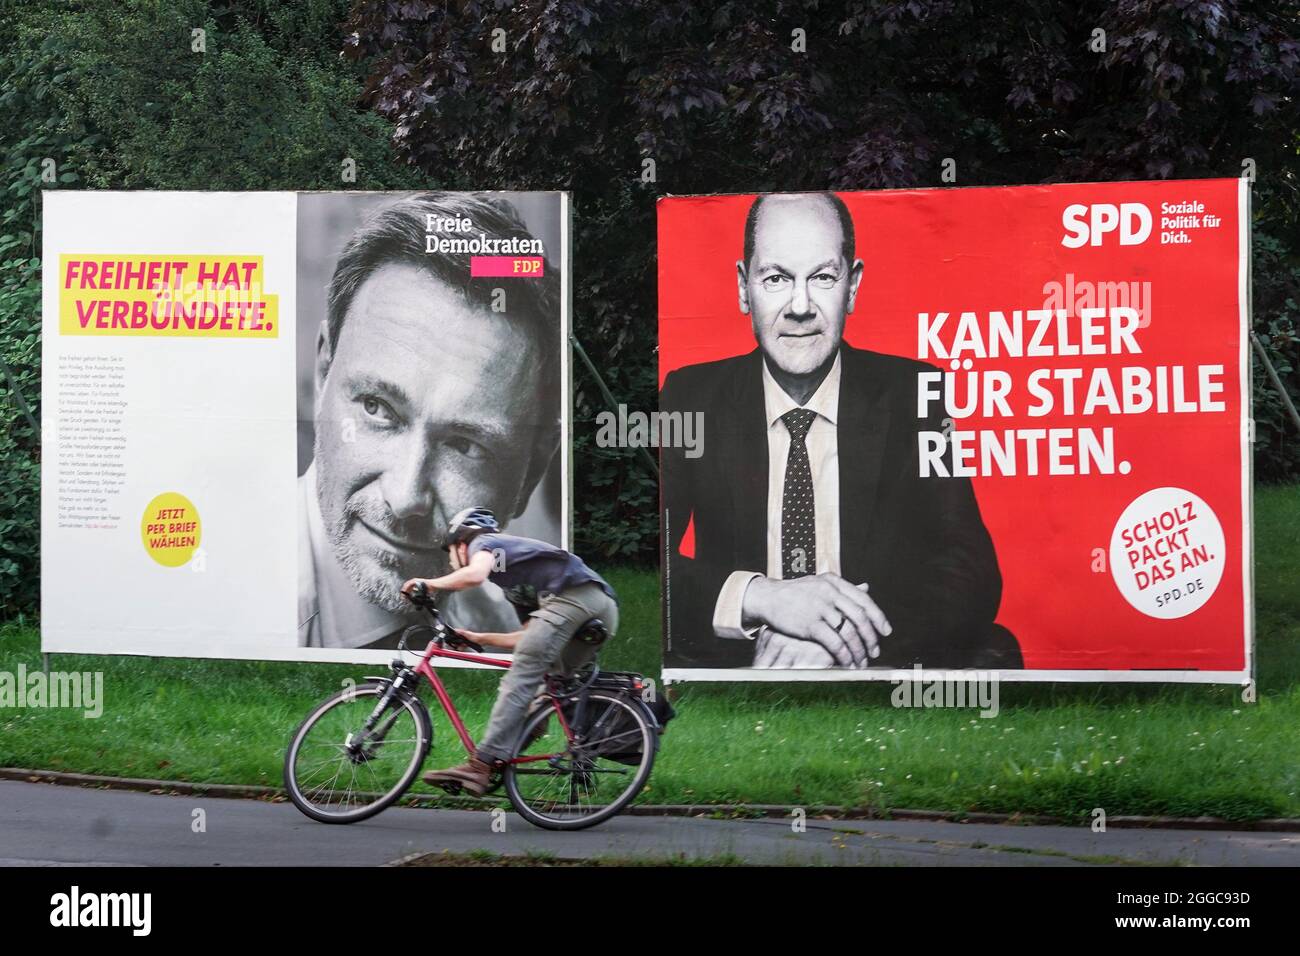 Bundestagswahl 2021, Wahlplakate der Parteien zur Bundestagswahl am 26.9.2021: FDP (Christian Lindner) und SPD (Olaf Scholz). Dortmund, 30.08.2021 Stock Photo